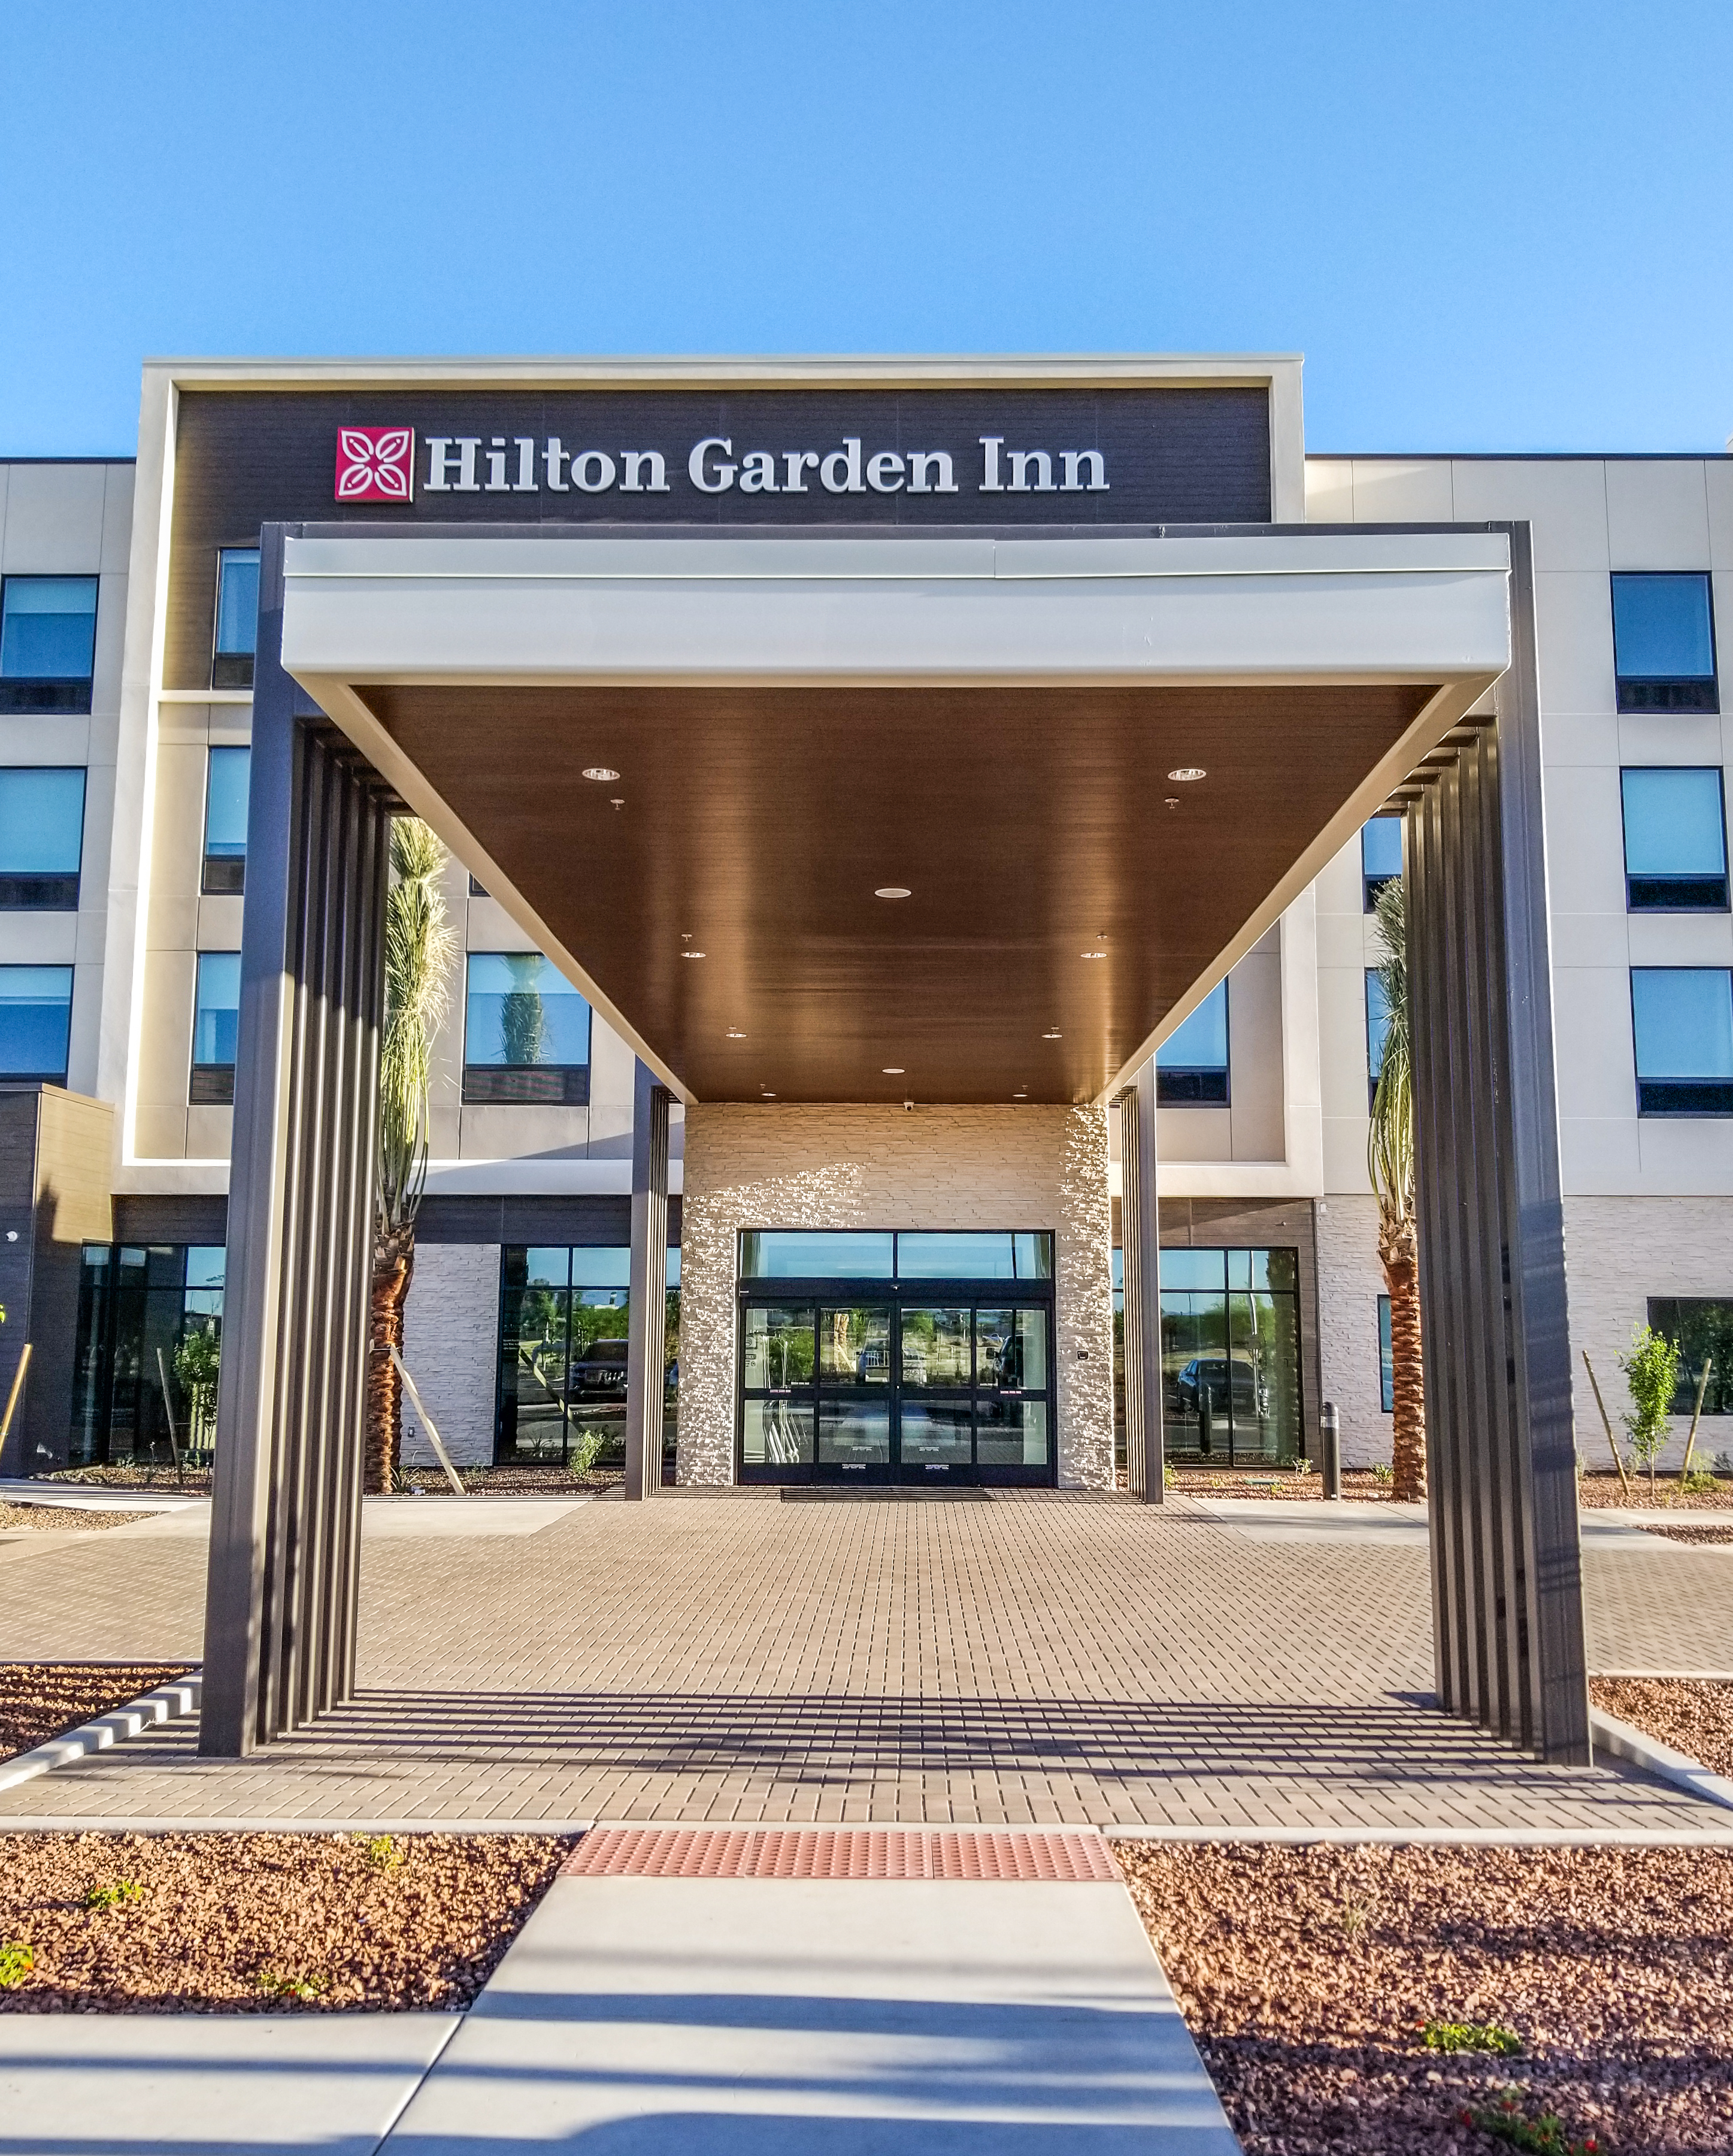 Hilton Garden Inn Porte Cochere